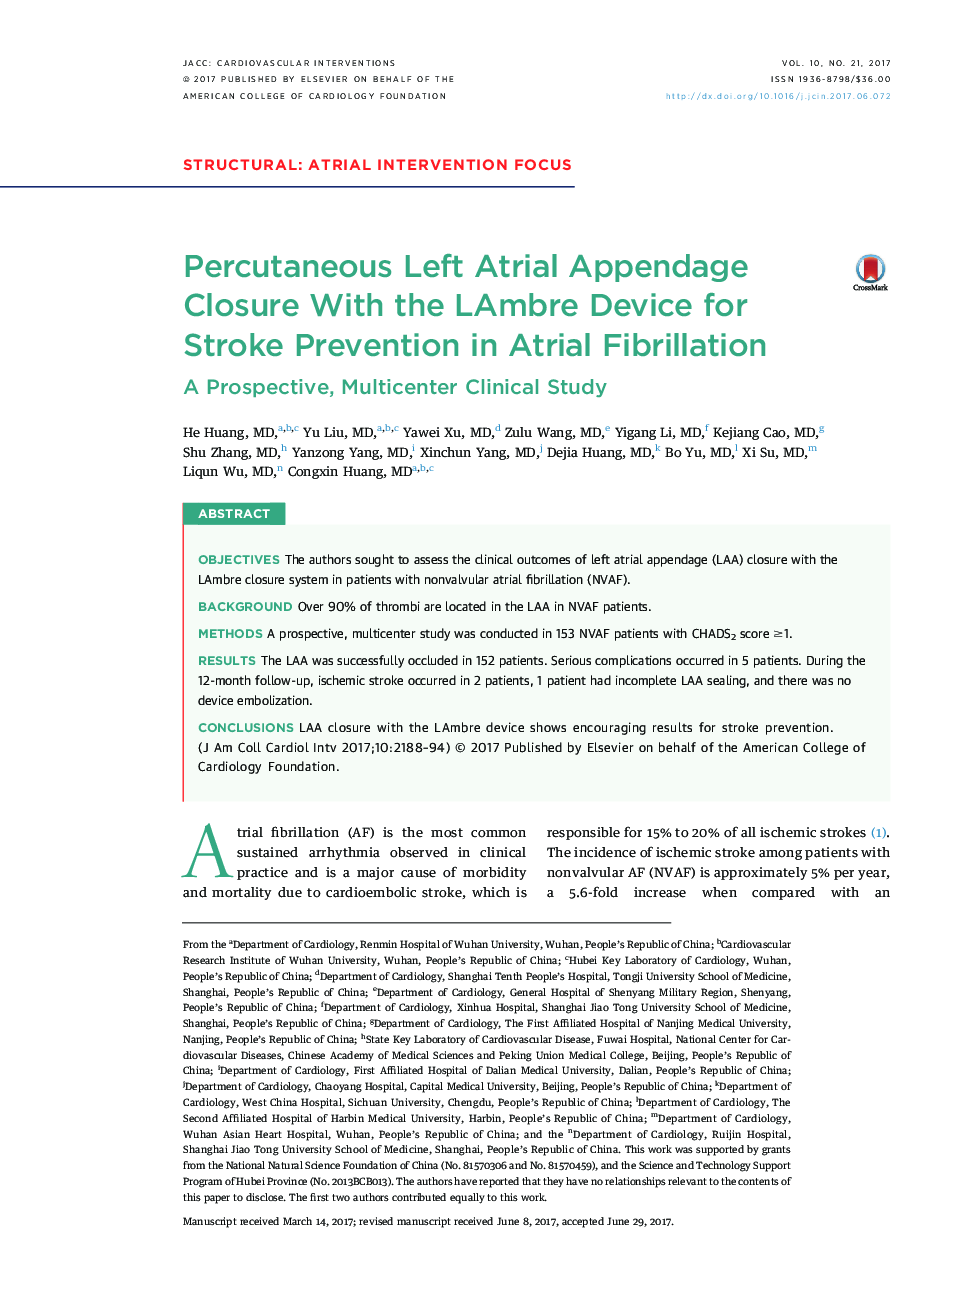 Percutaneous Left Atrial Appendage Closure With the LAmbre Device for StrokeÂ Prevention in Atrial Fibrillation